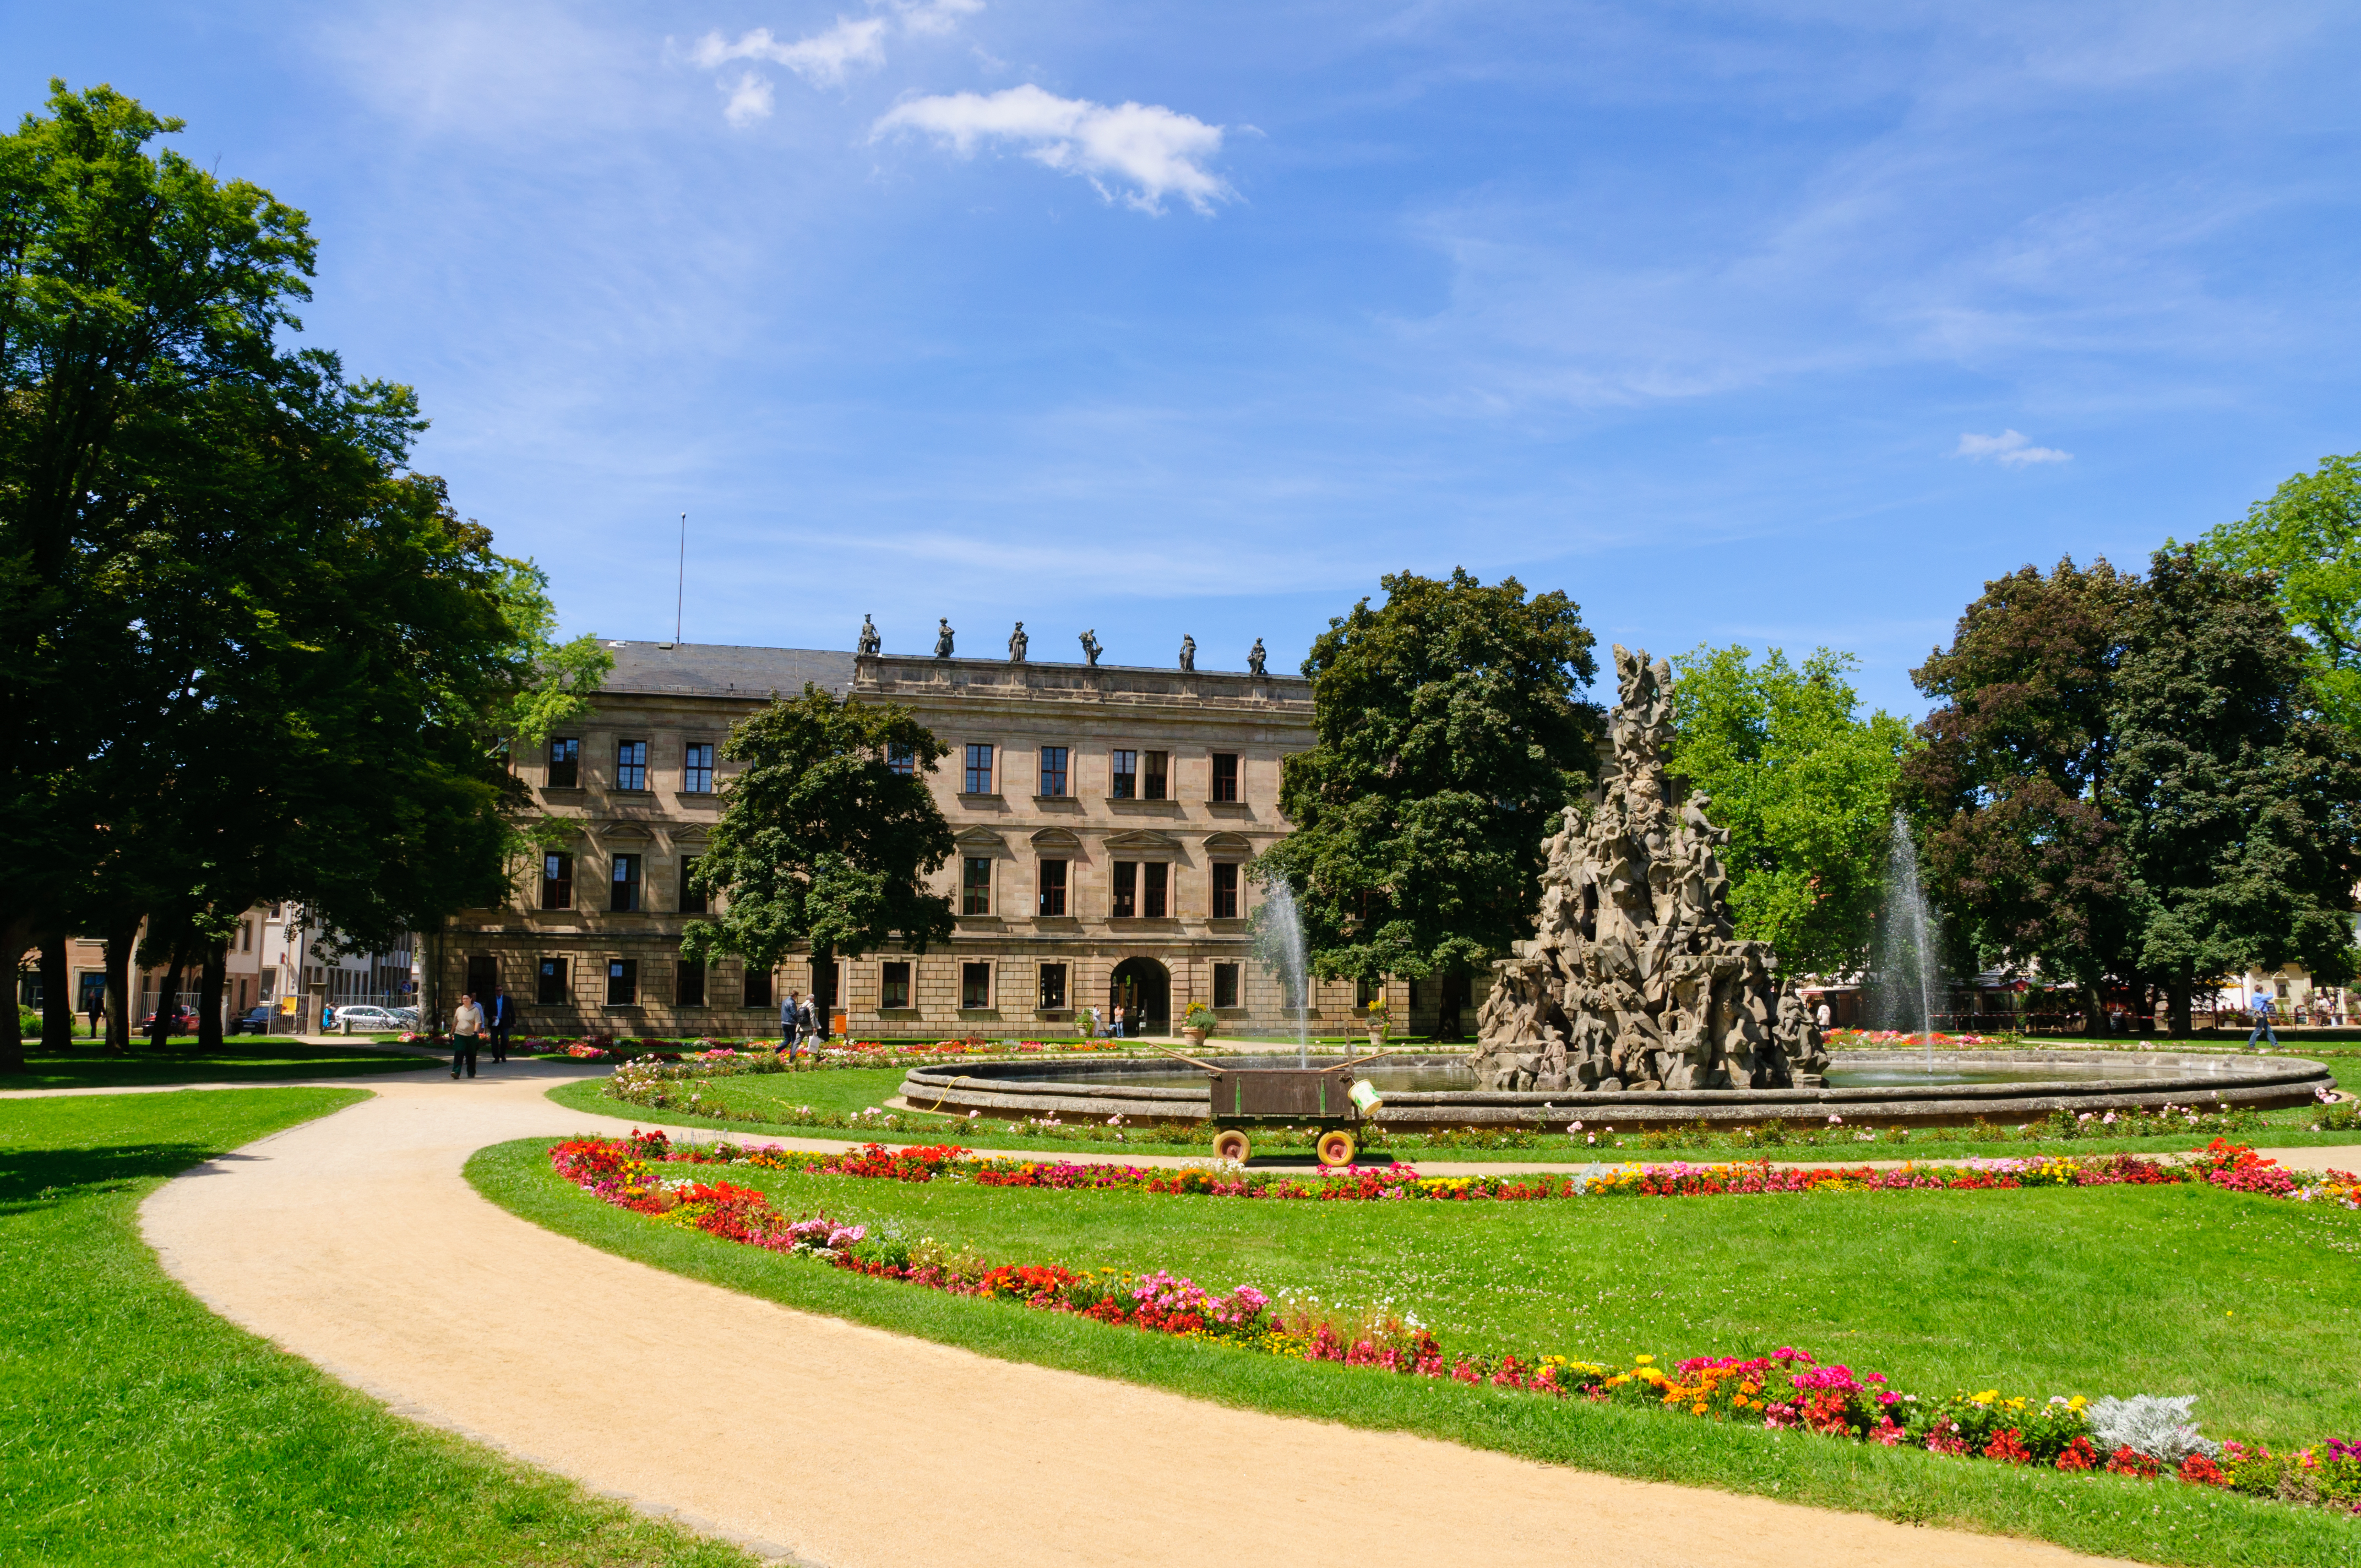 Schlossgarten in Erlangen mit Brunnen und Schloss im Hintergrund